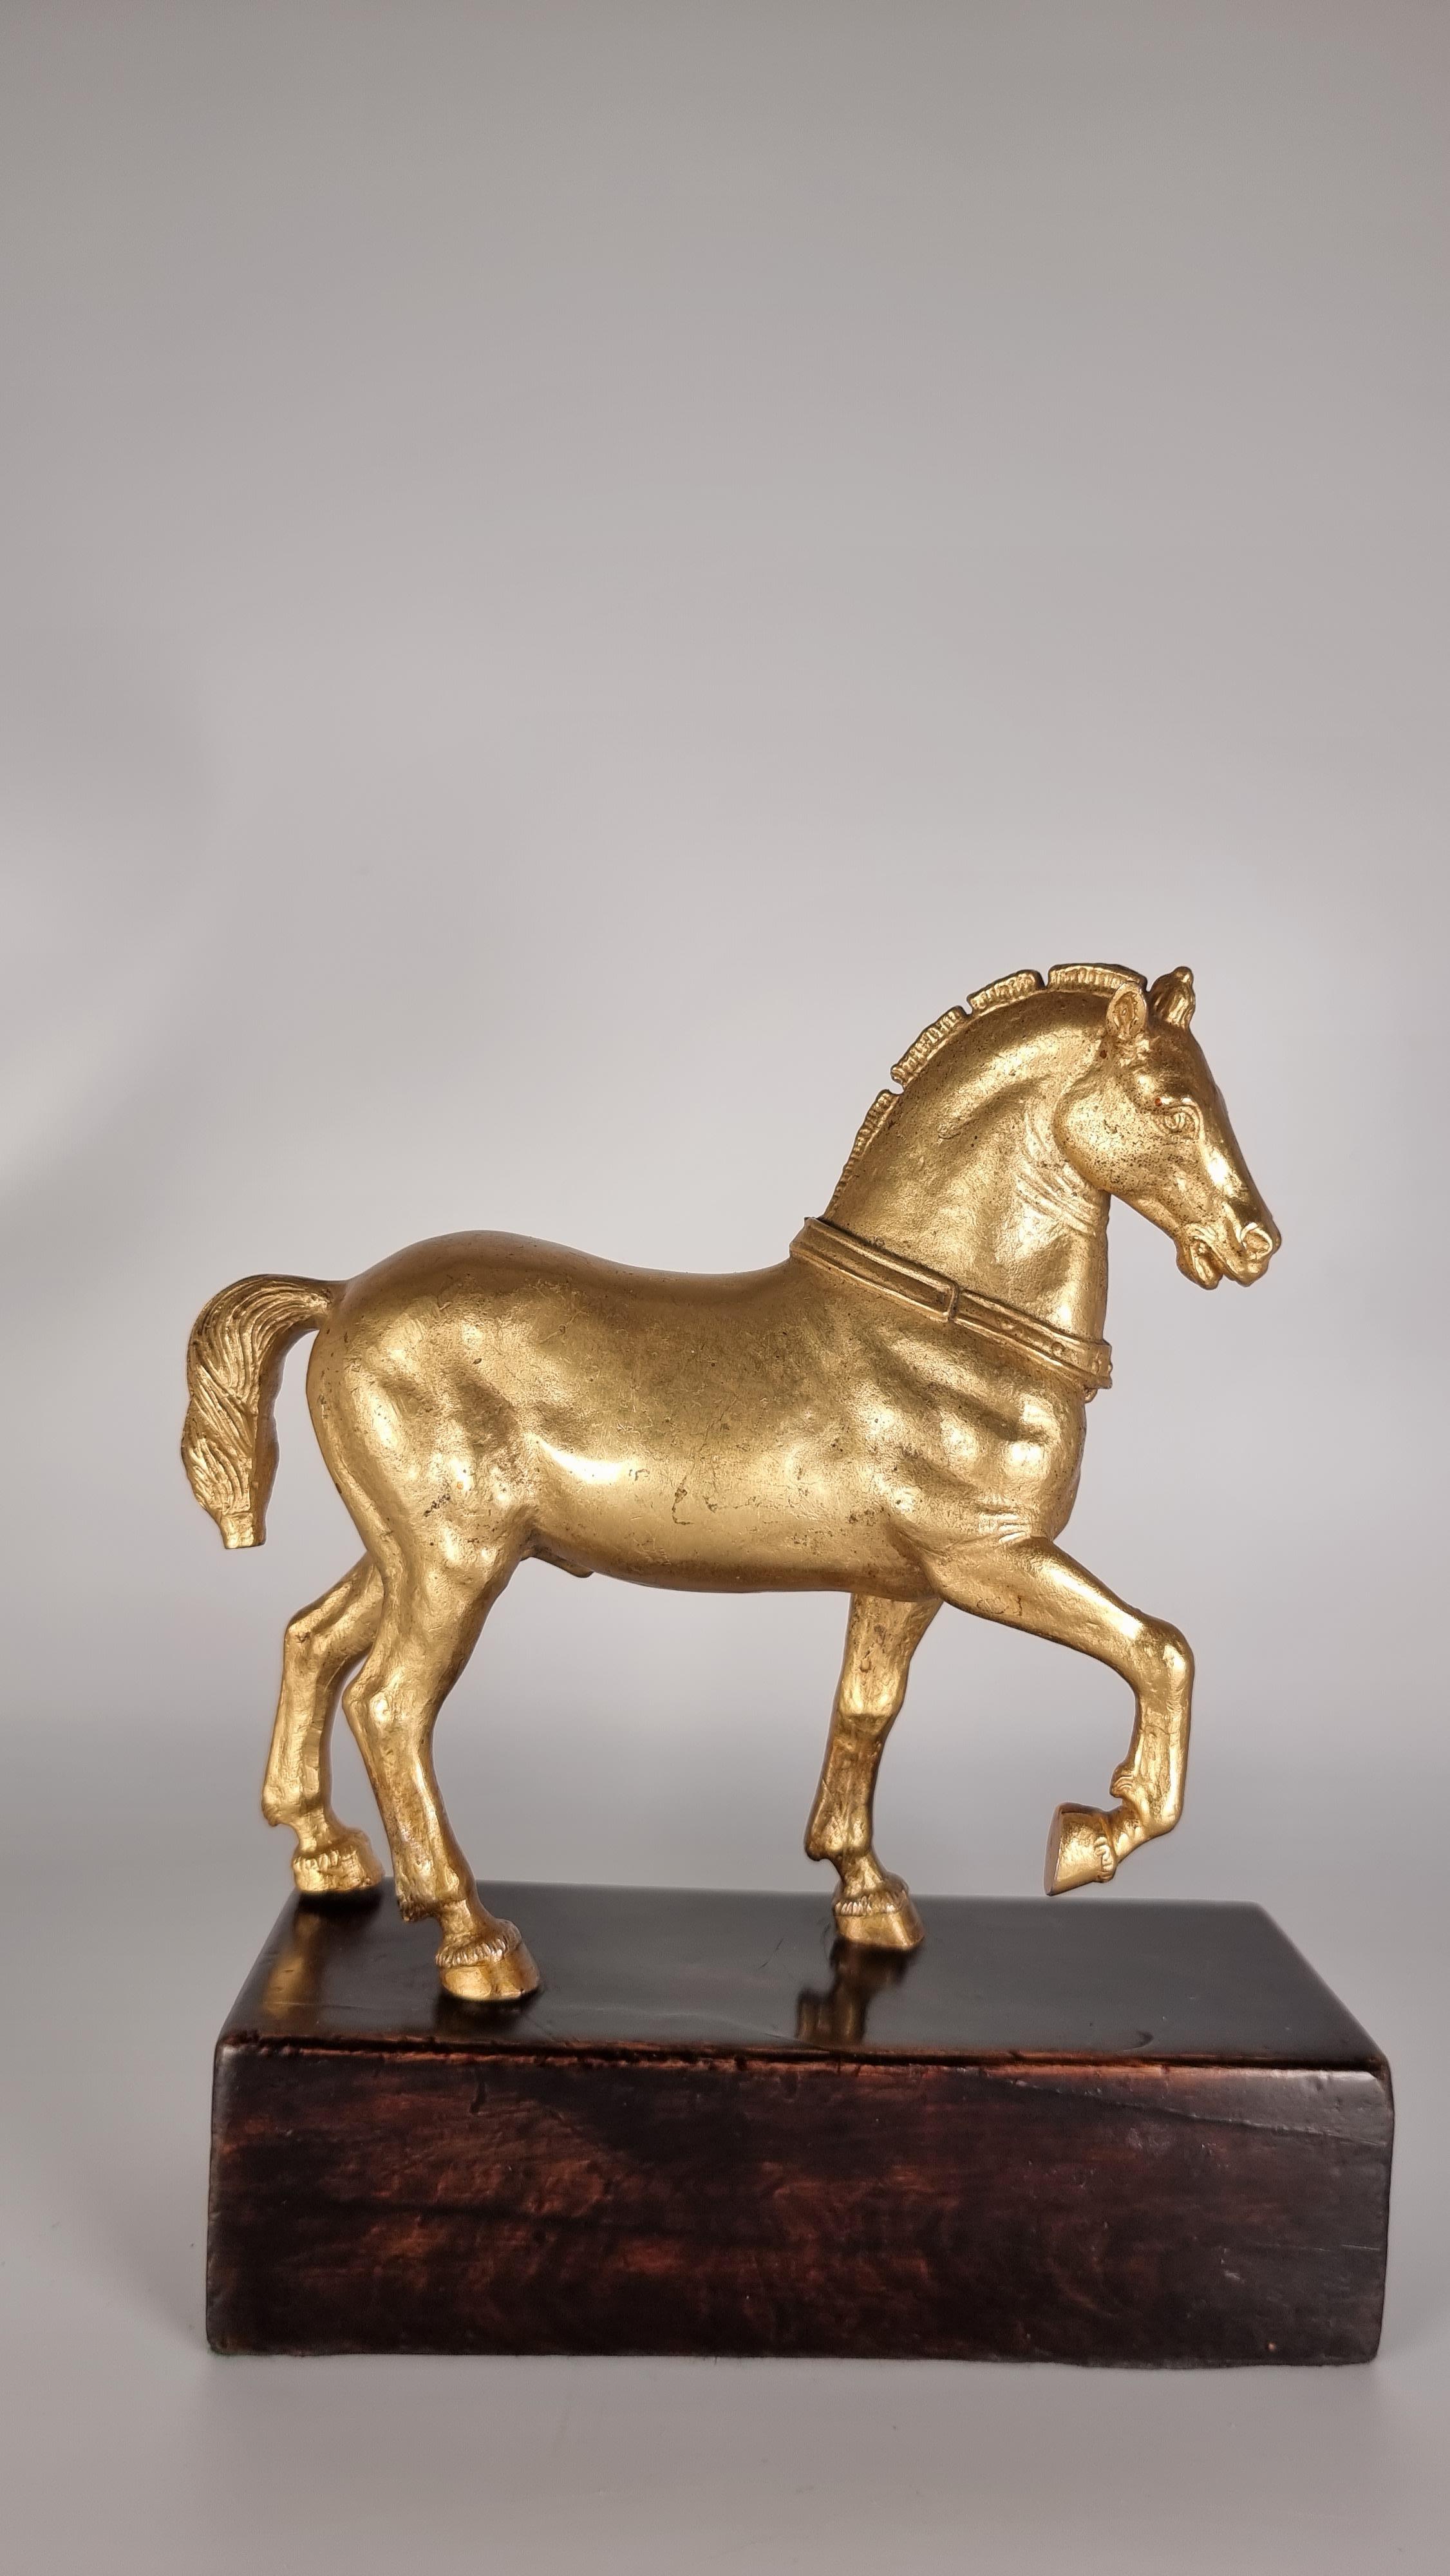 Cette superbe paire de bronzes dorés italiens du Grand Tour date de la fin du XIXe siècle. Ils sont solidement moulés et très lourds pour leur taille. Il s'agit de reproductions décoratives du Grand Tour tirées des chevaux originaux connus sous le